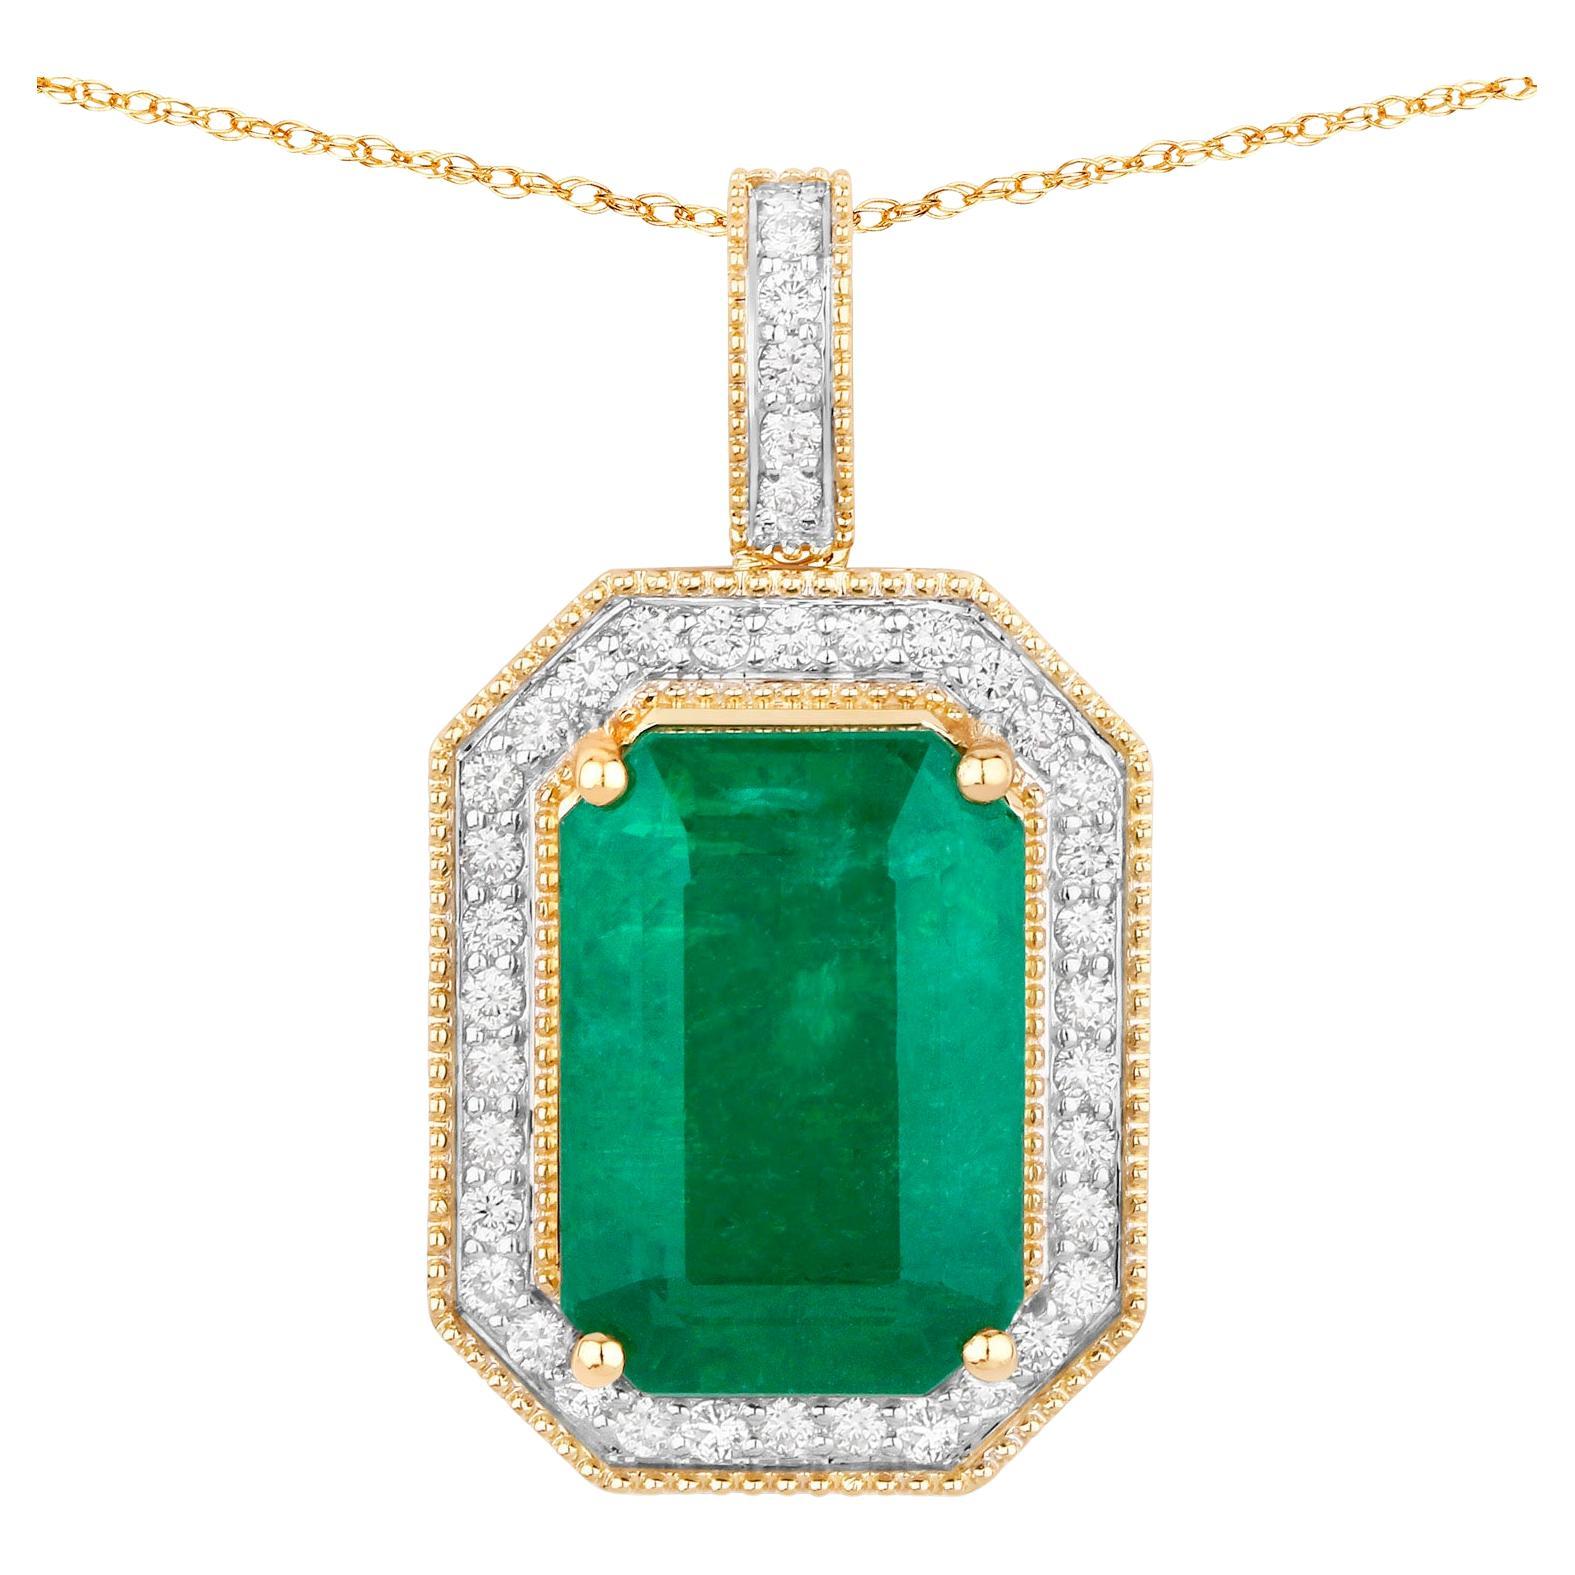 IGI Certified Zambian Emerald Pendant Necklace Diamond Setting Carats 14K Gold